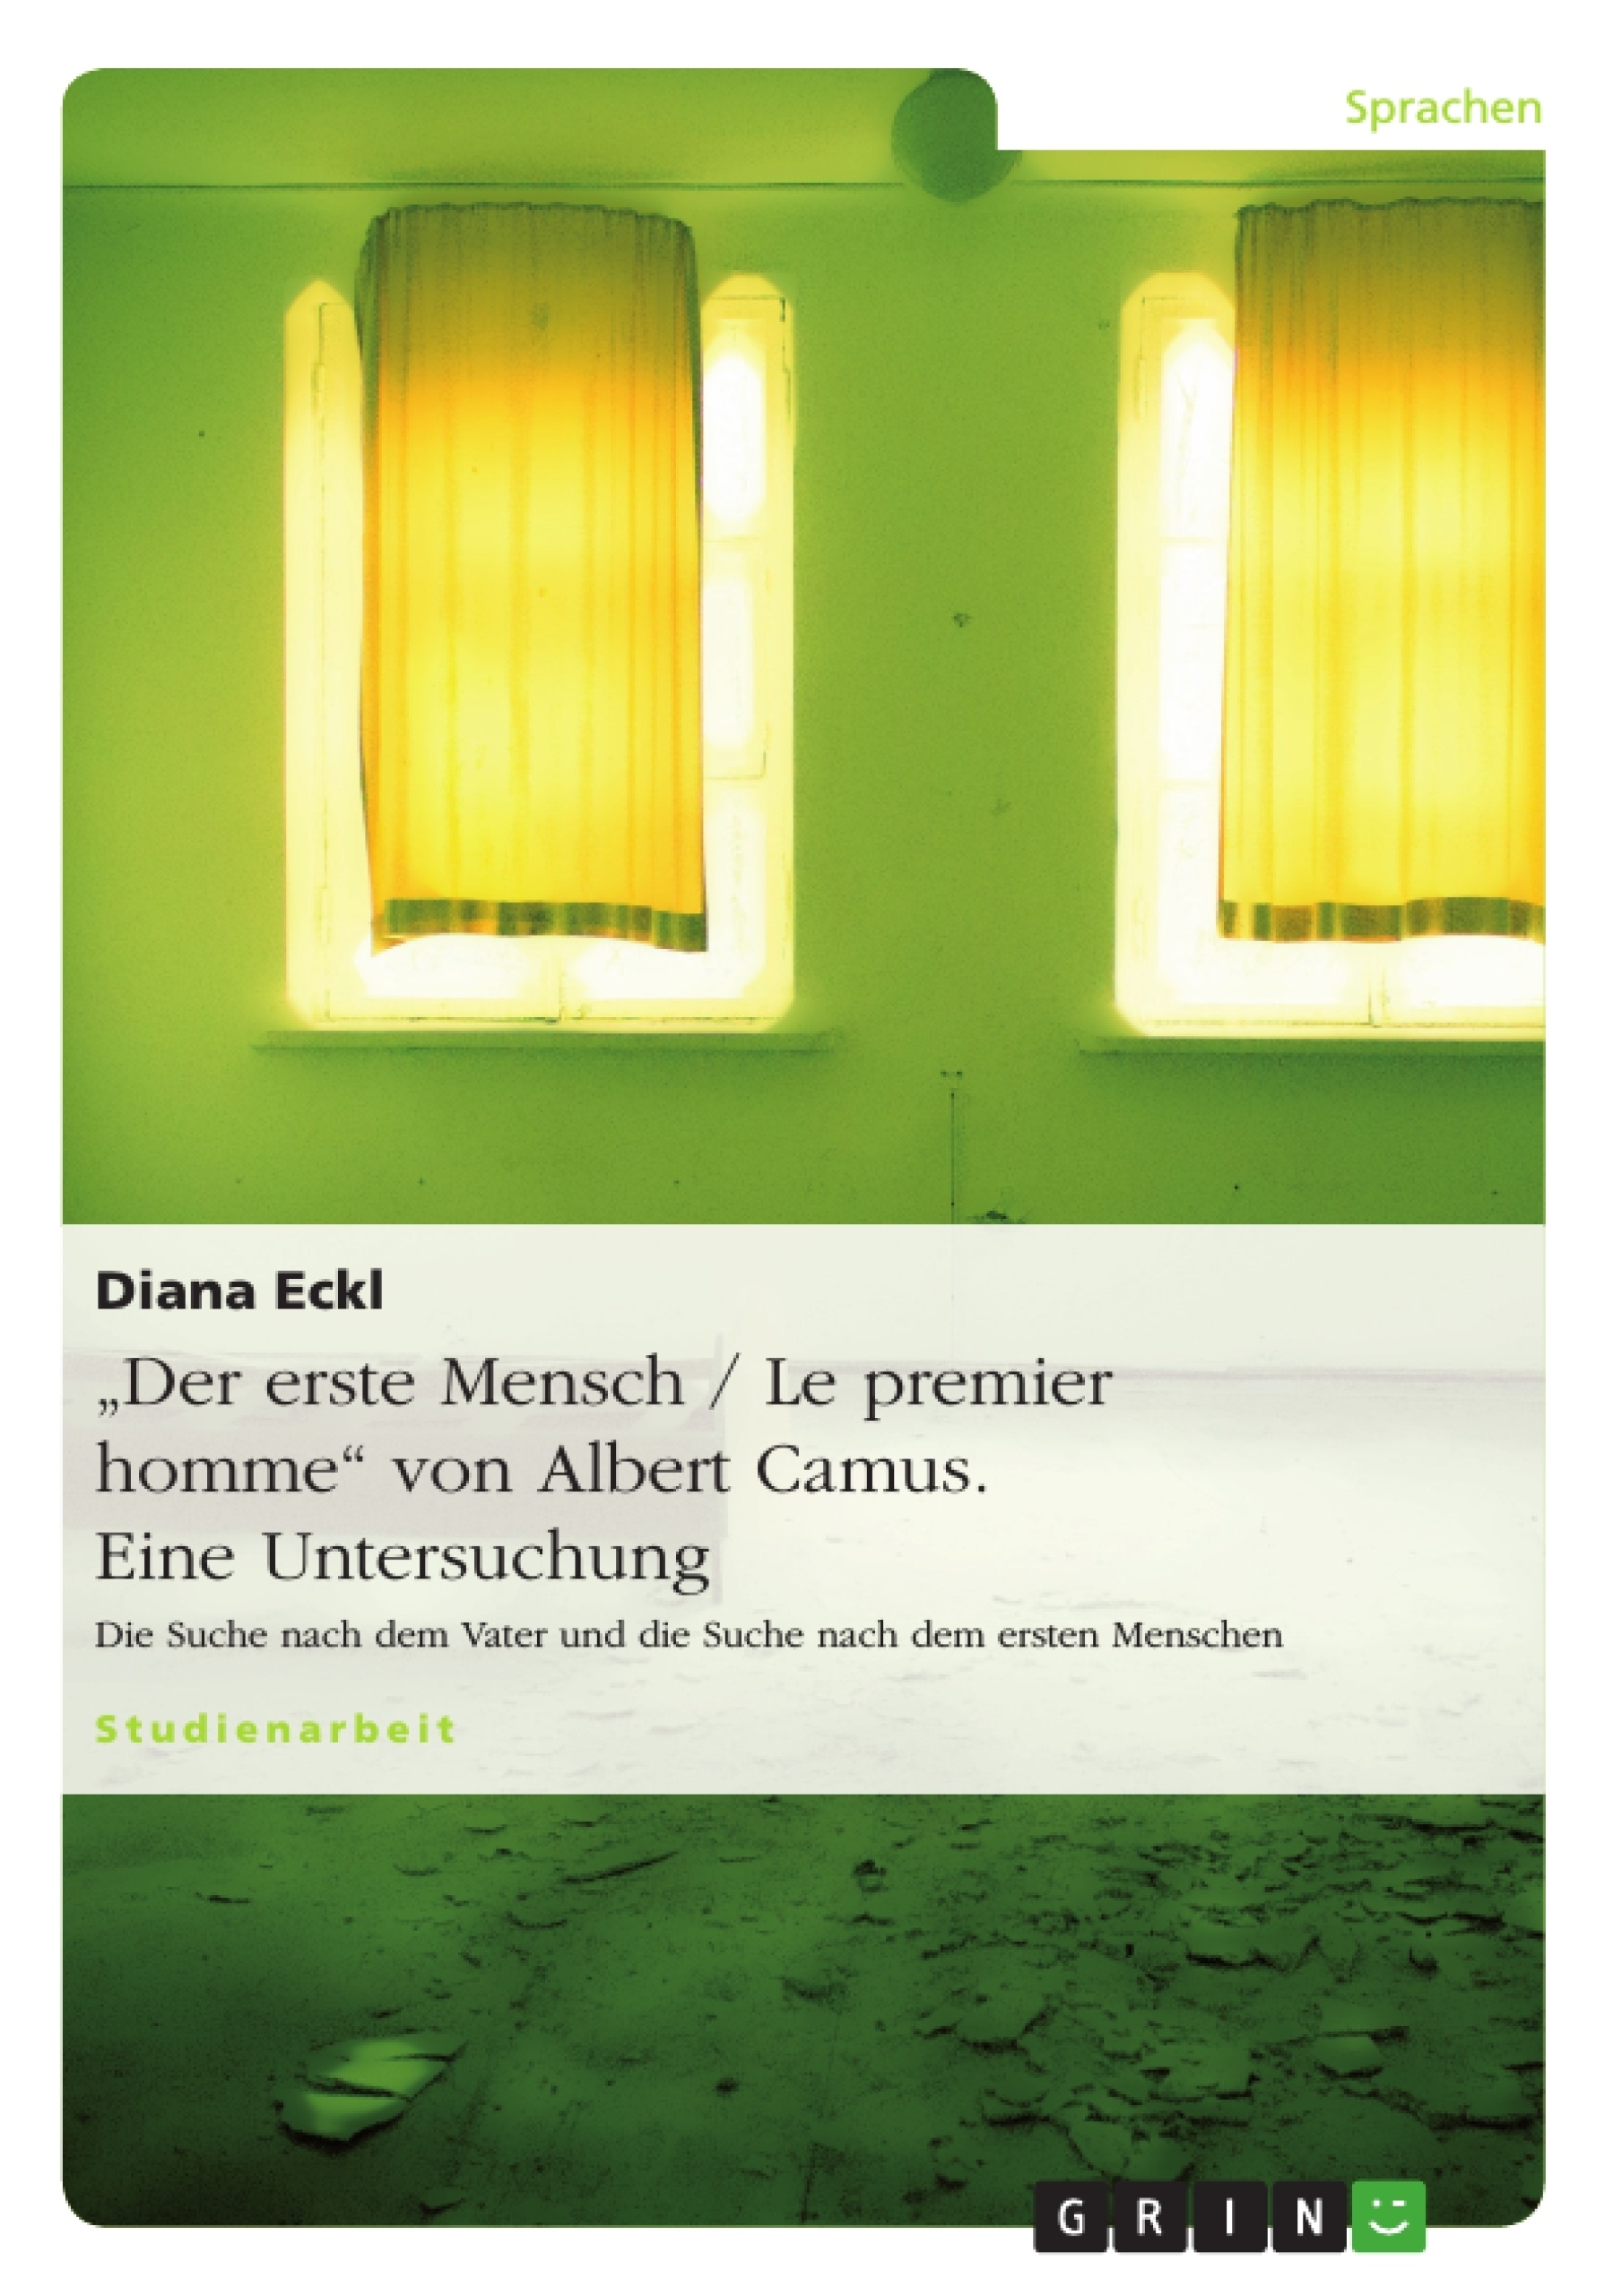 Título: "Der erste Mensch / Le premier homme" von Albert Camus. Eine Untersuchung